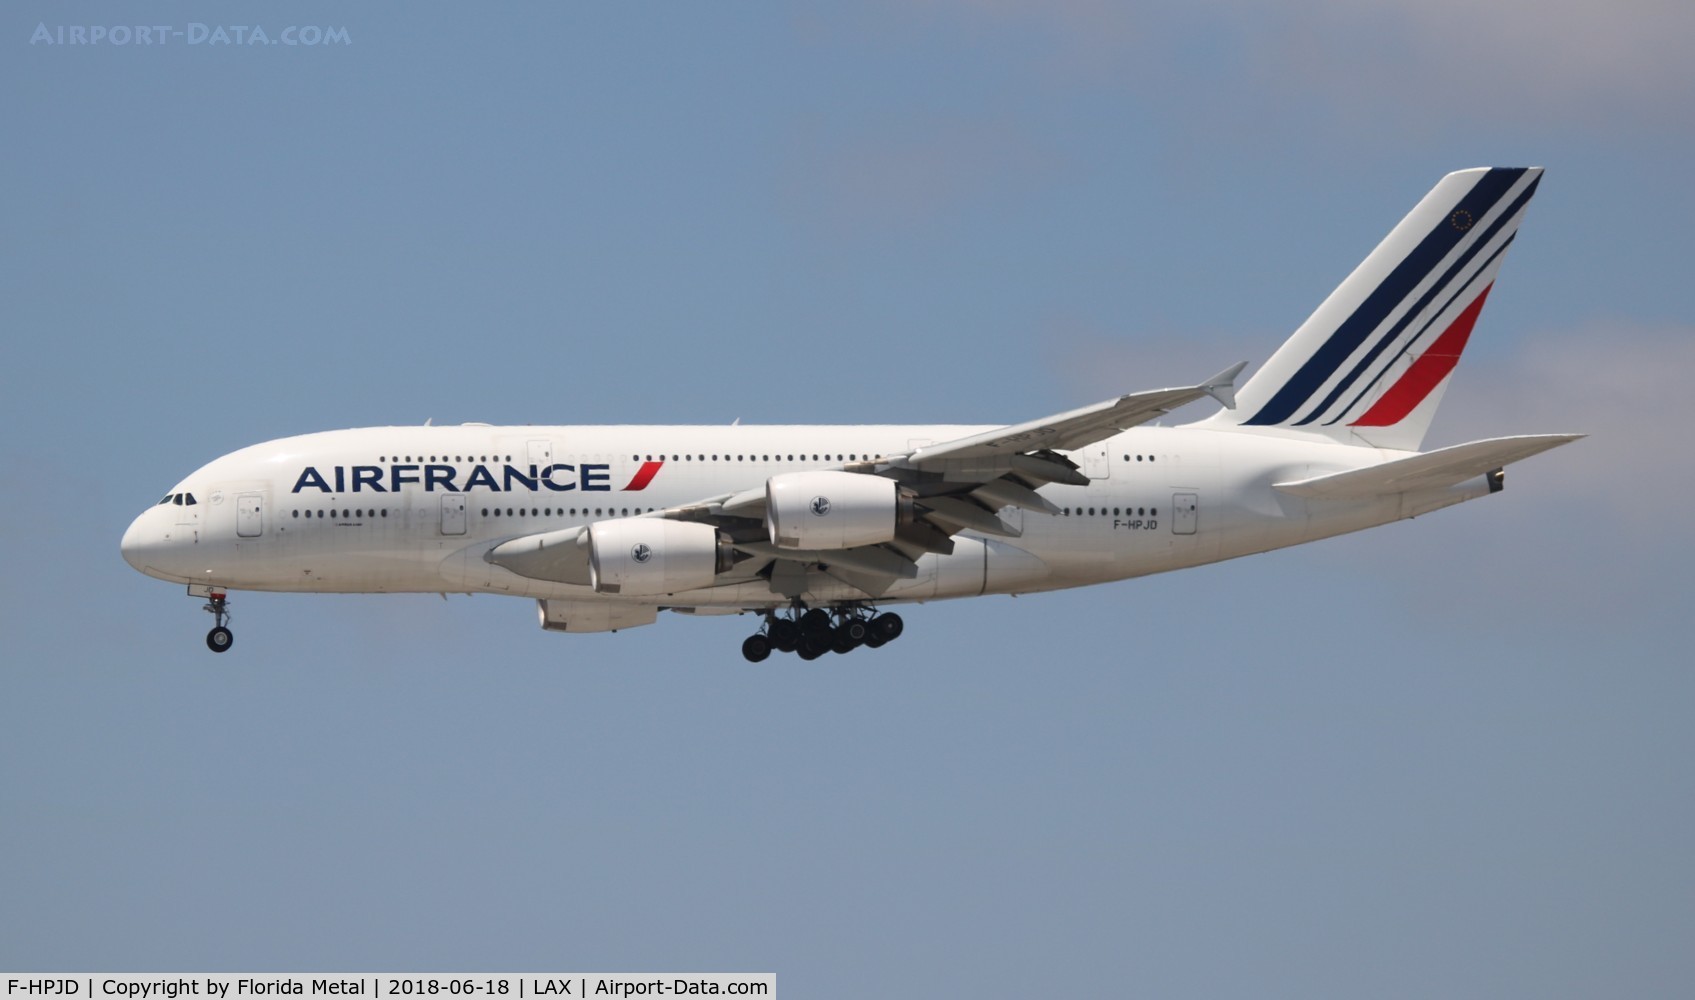 F-HPJD, 2010 Airbus A380-861 C/N 049, Air France